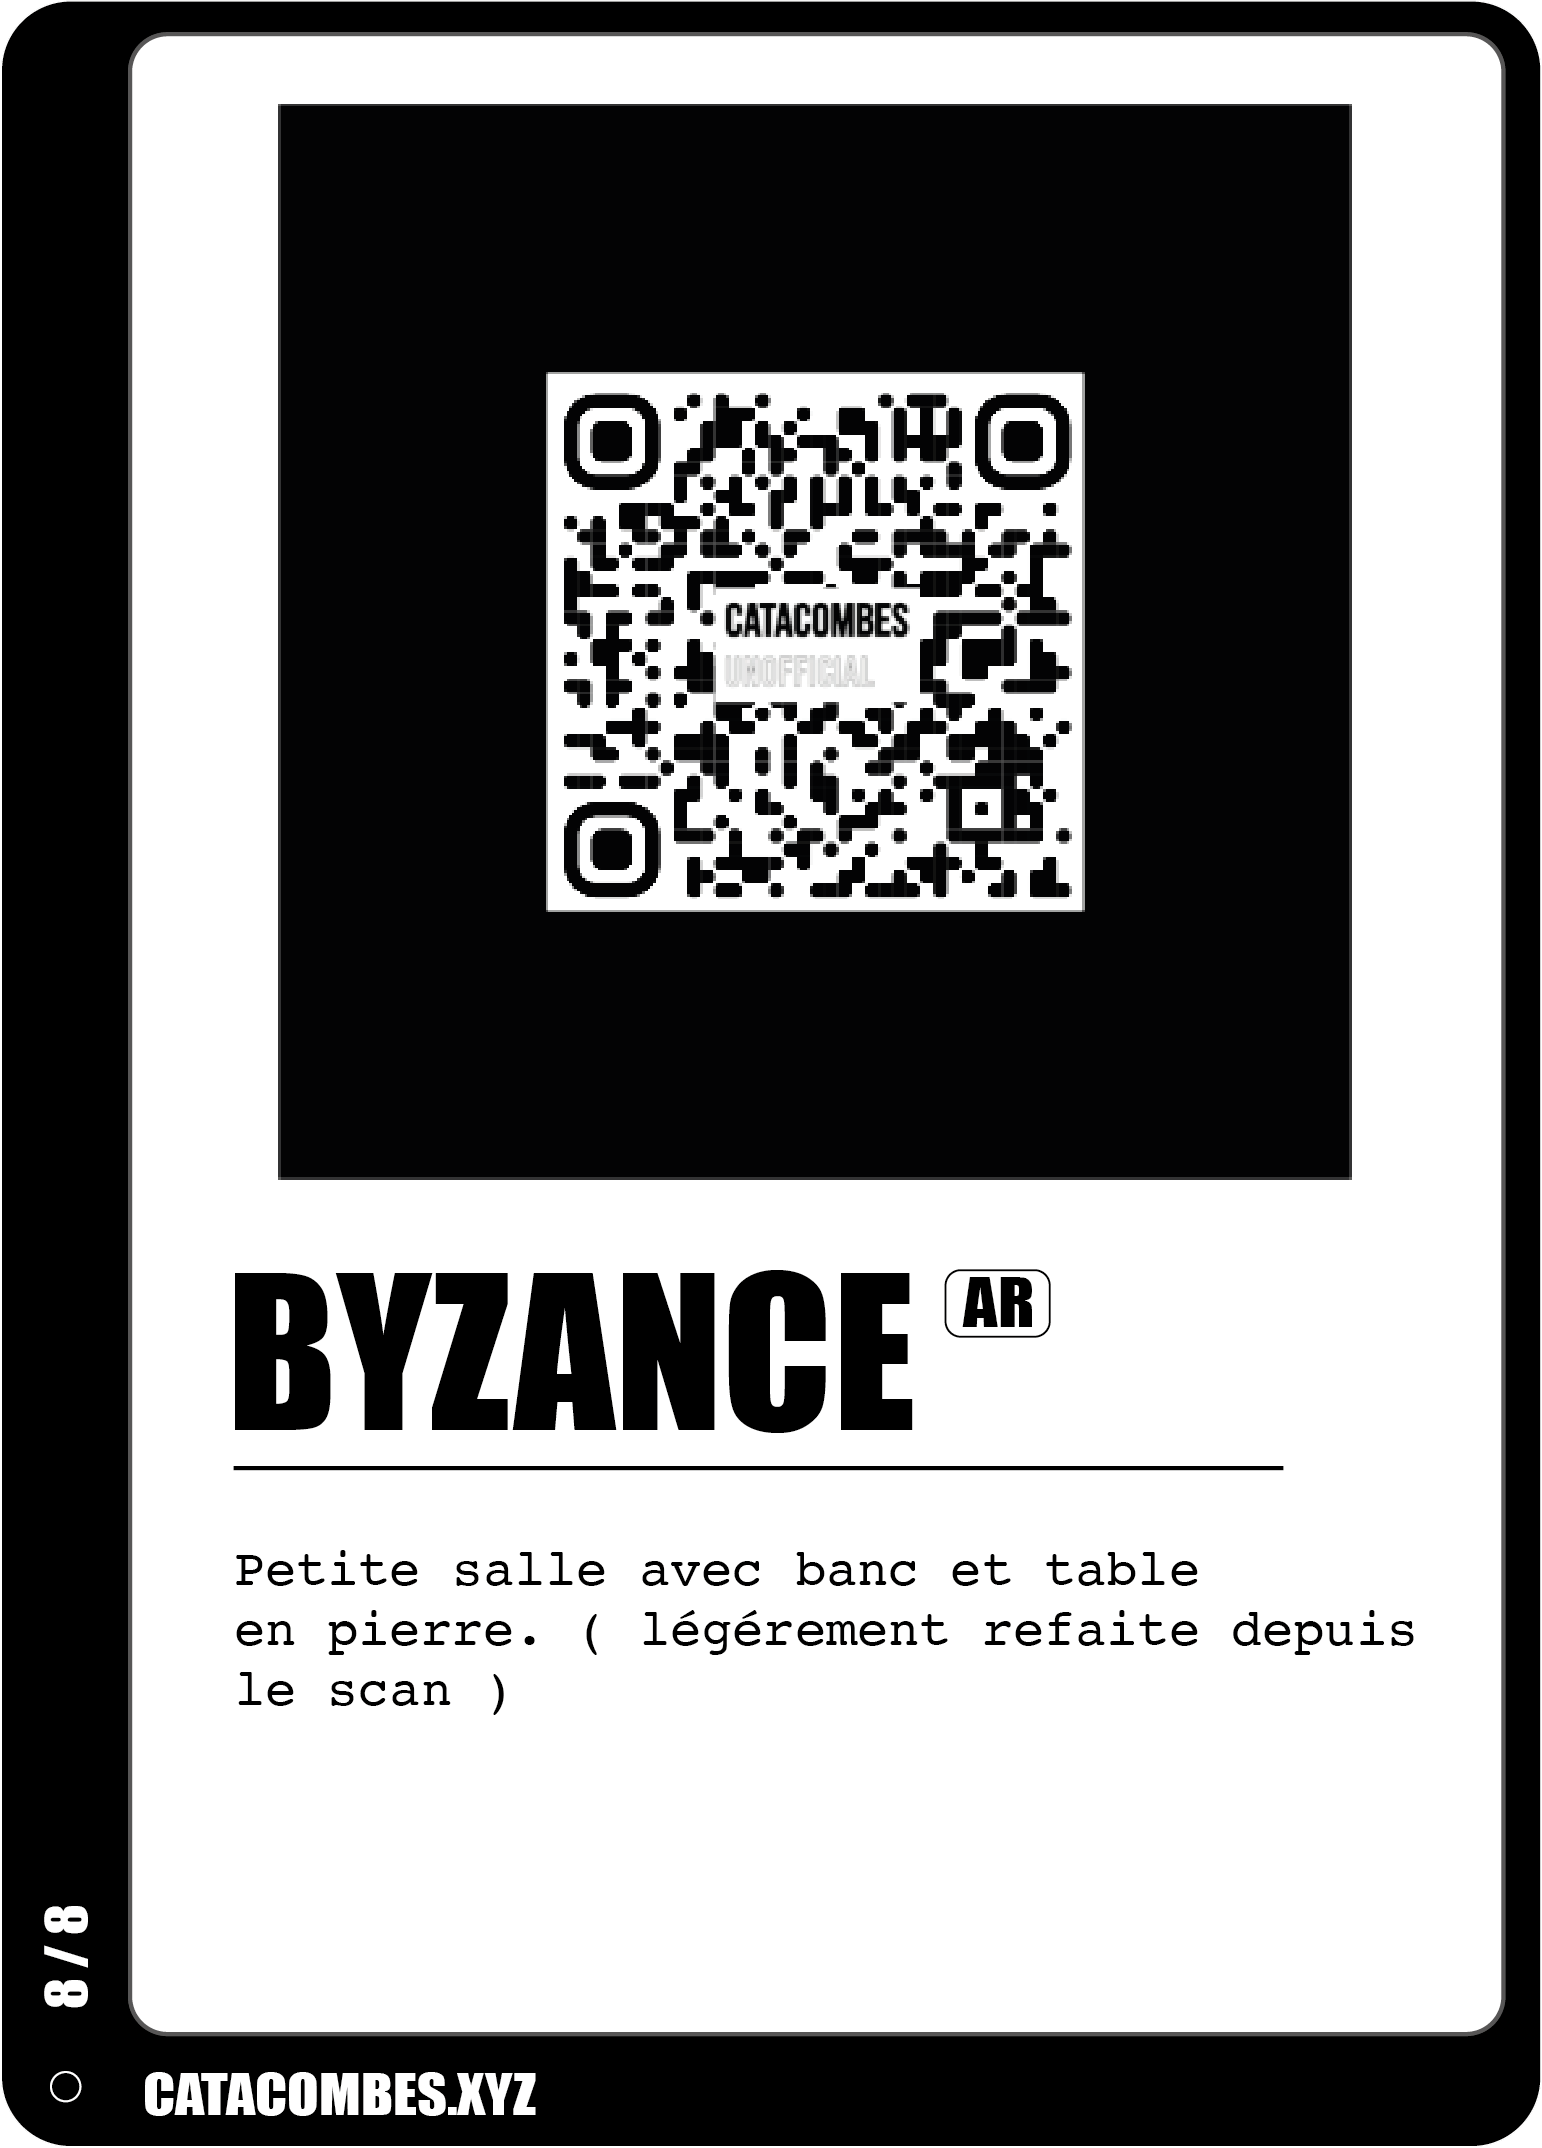 QR code permettant de faire apparaitre la salle Byzance en AR ainsi que des informations